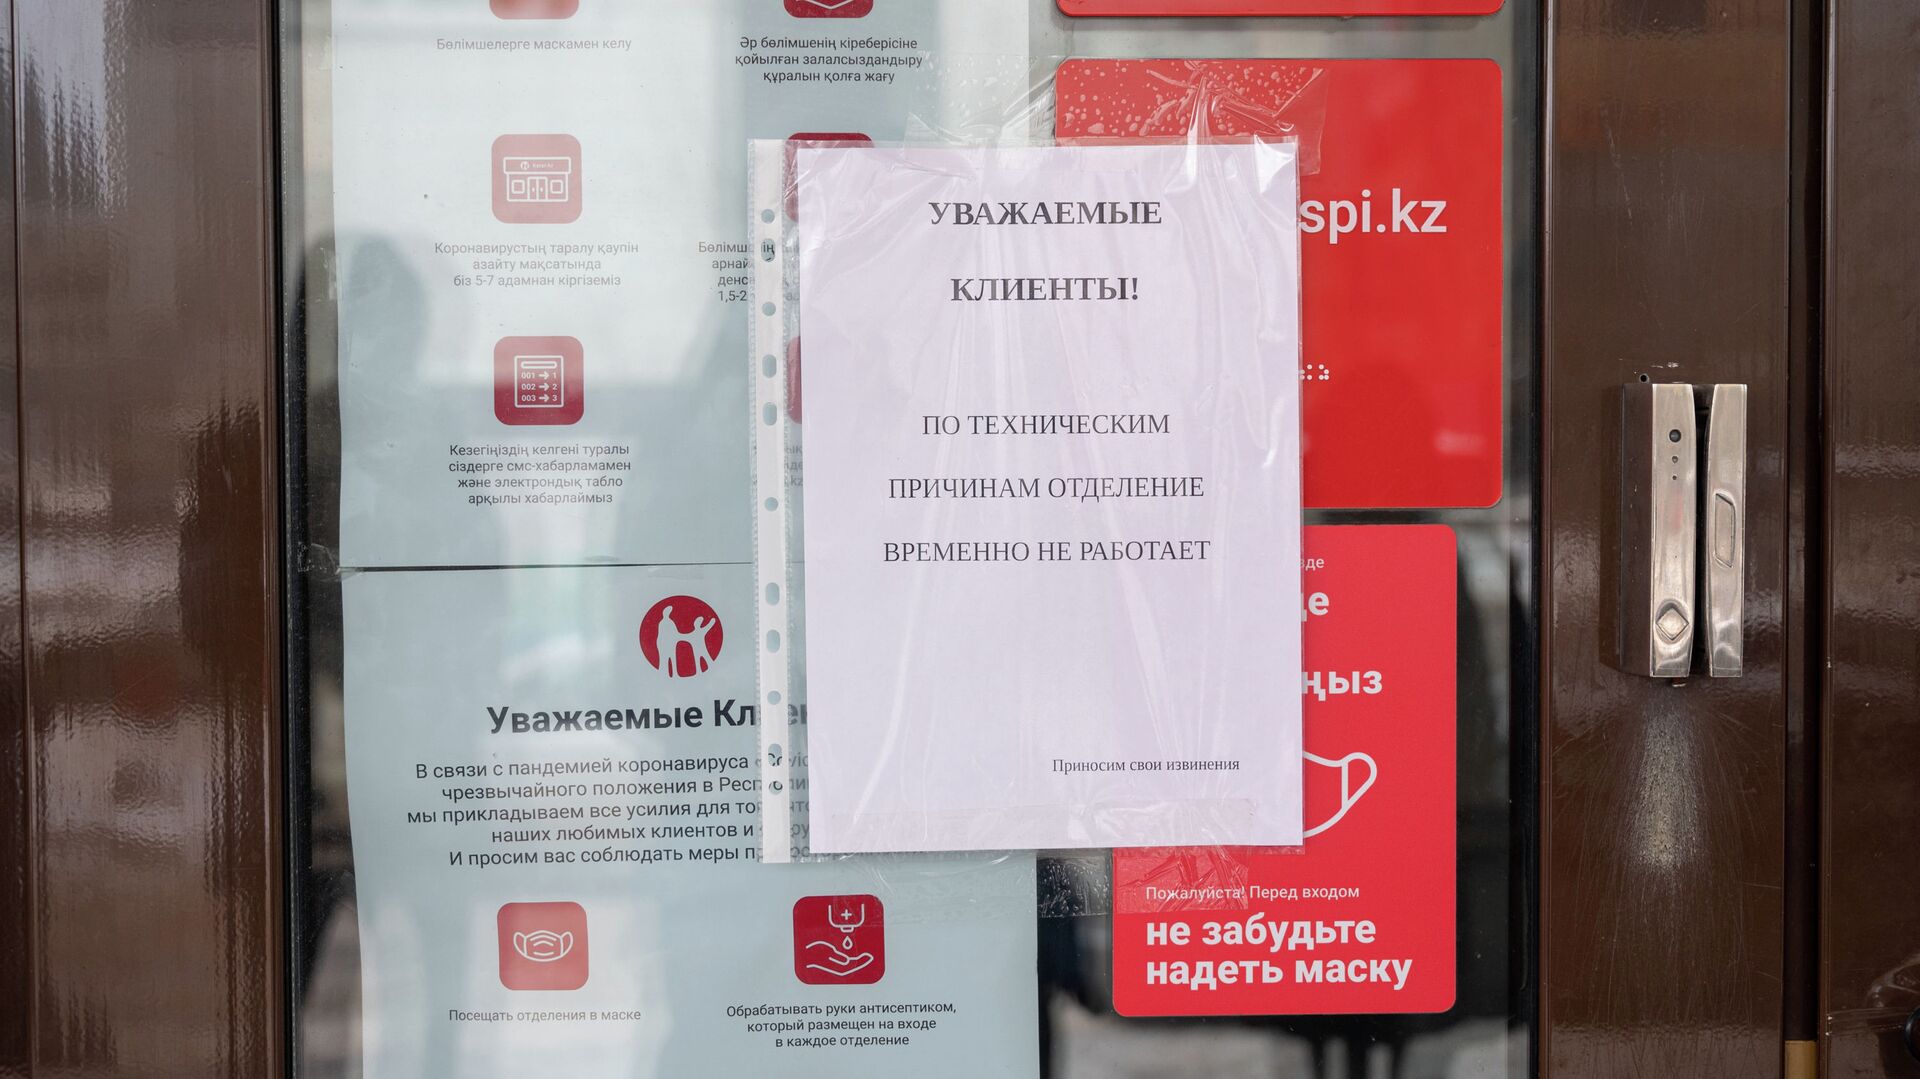 Объявление на двереях отделения банка в Нур-Султане  - Sputnik Казахстан, 1920, 01.02.2022